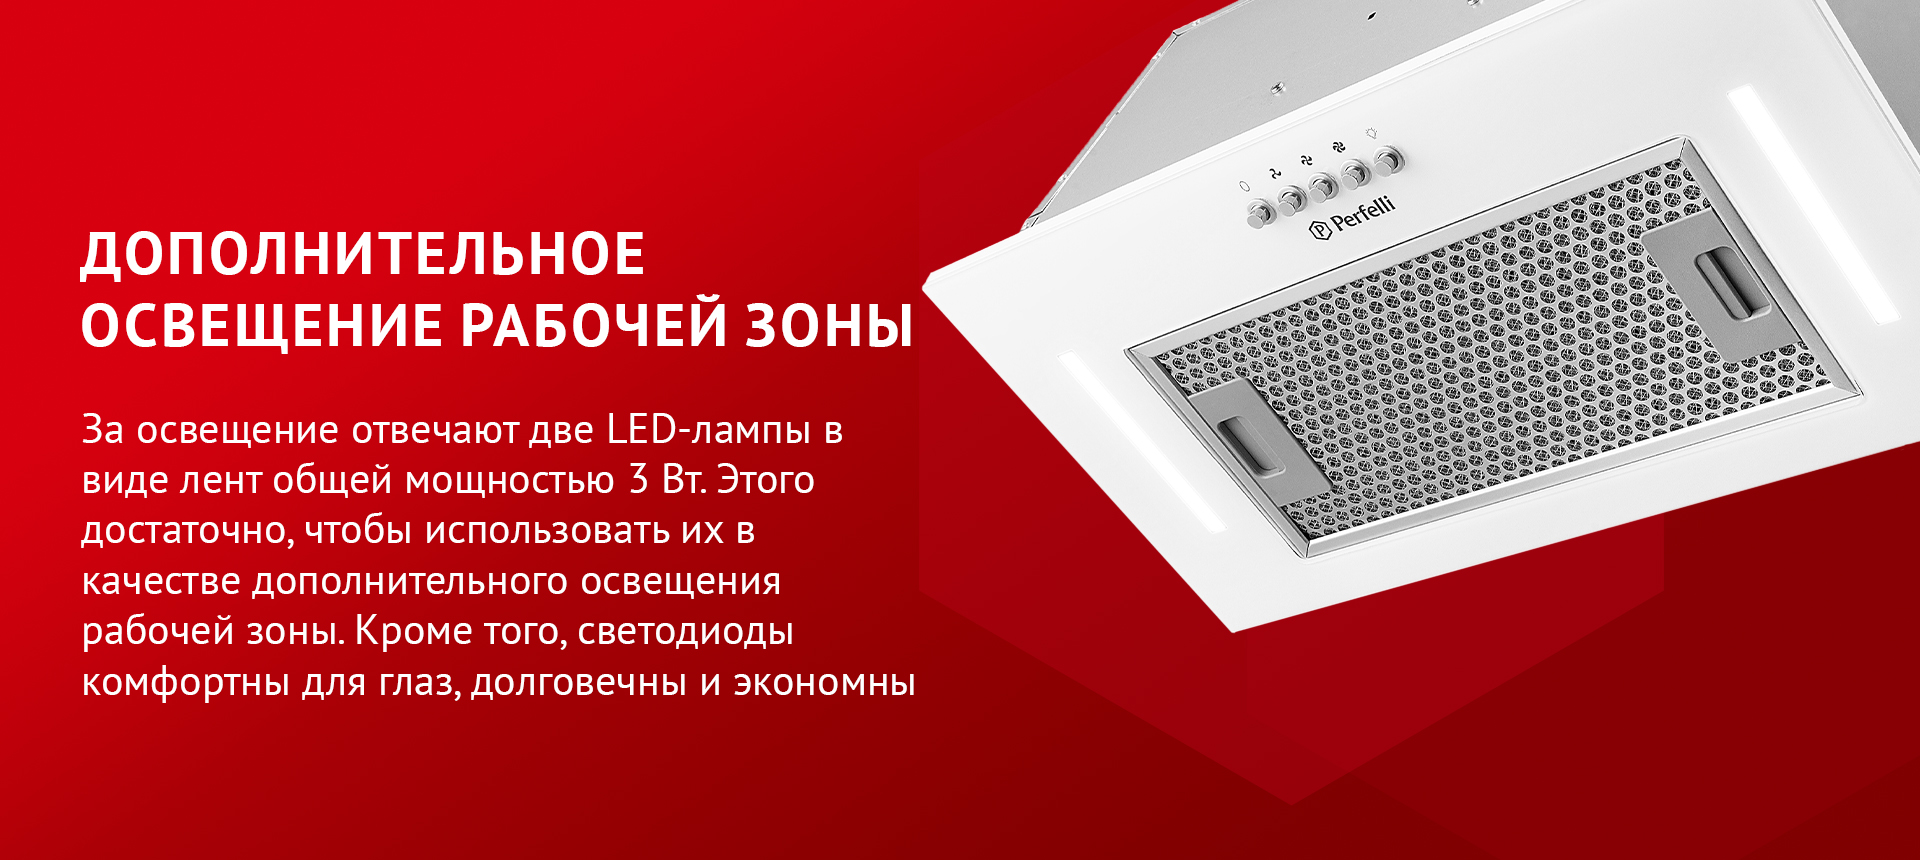 За освещение отвечают две LED-лампы в виде лент общей мощностью 3 Вт. Этого достаточно, чтобы использовать их в качестве дополнительного освещения рабочей зоны. Кроме того, светодиоды комфортны для глаз, долговечны и экономны